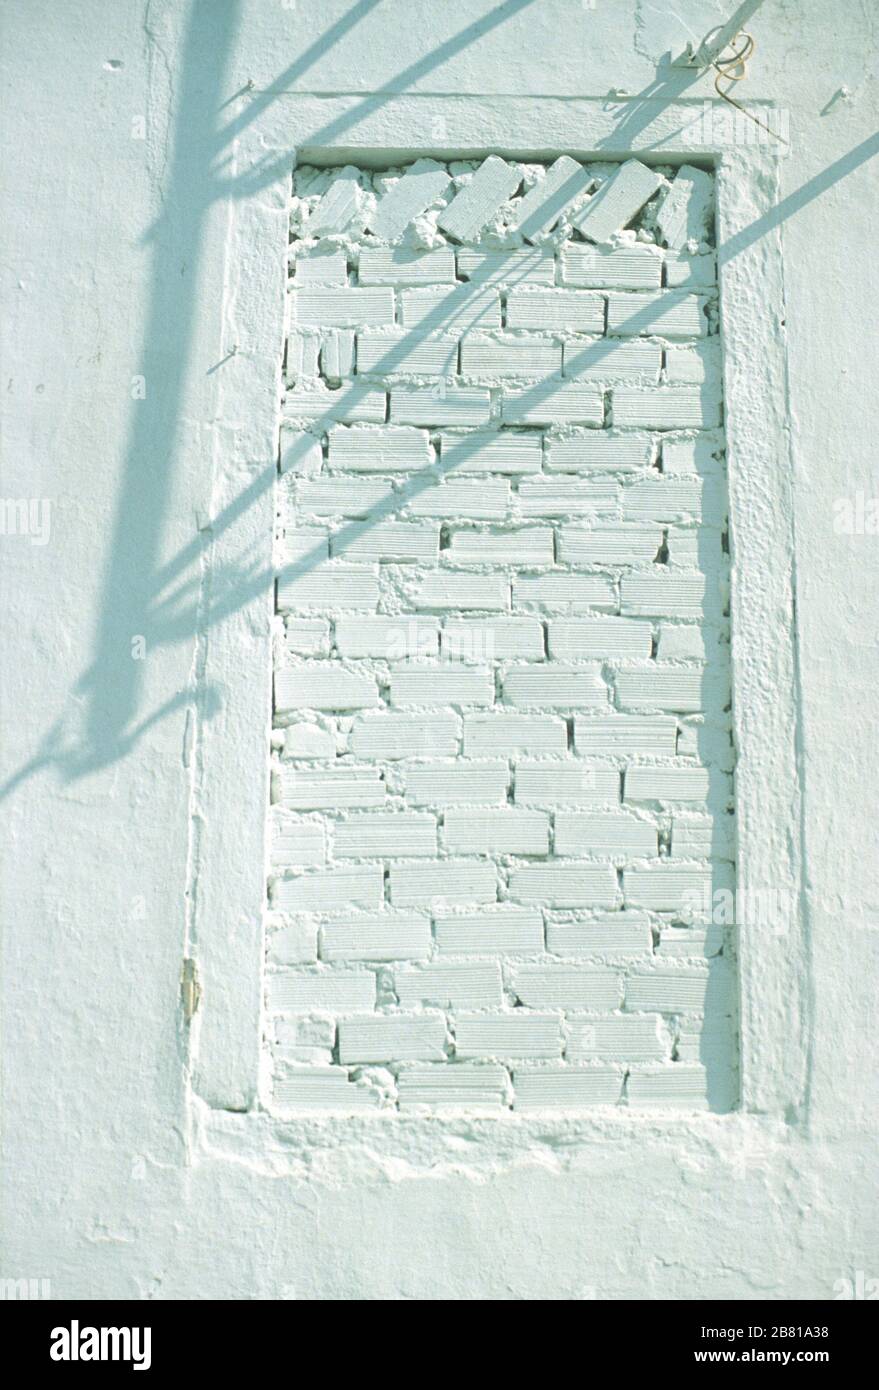 Una finestra in muratura, posta in alto sul bianco muro di pietra di un edificio a Parga, Preveza, Epiro, Grecia. I cavi elettrici sopra gettano un'ombra sulla parete. Foto Stock